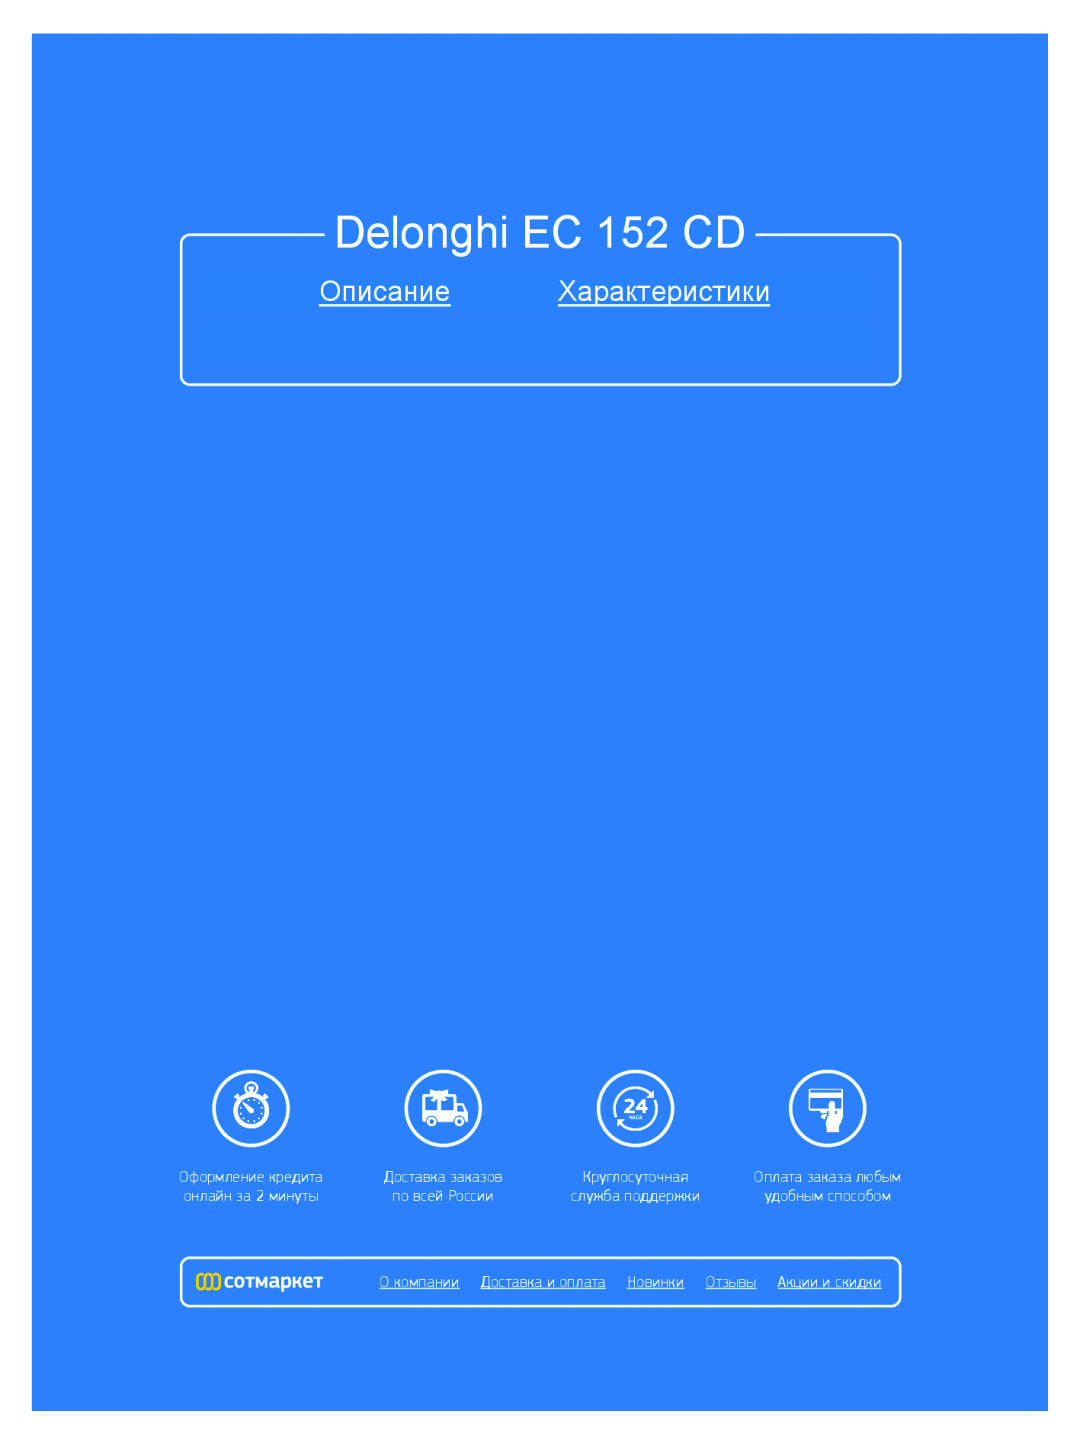 DeLonghi Delonghi EC 152 CD, Описание Характеристики, мл ни, Д т в, т чн я, л т з, н з 2 мин ты, л жб, дд ж и, д бным 